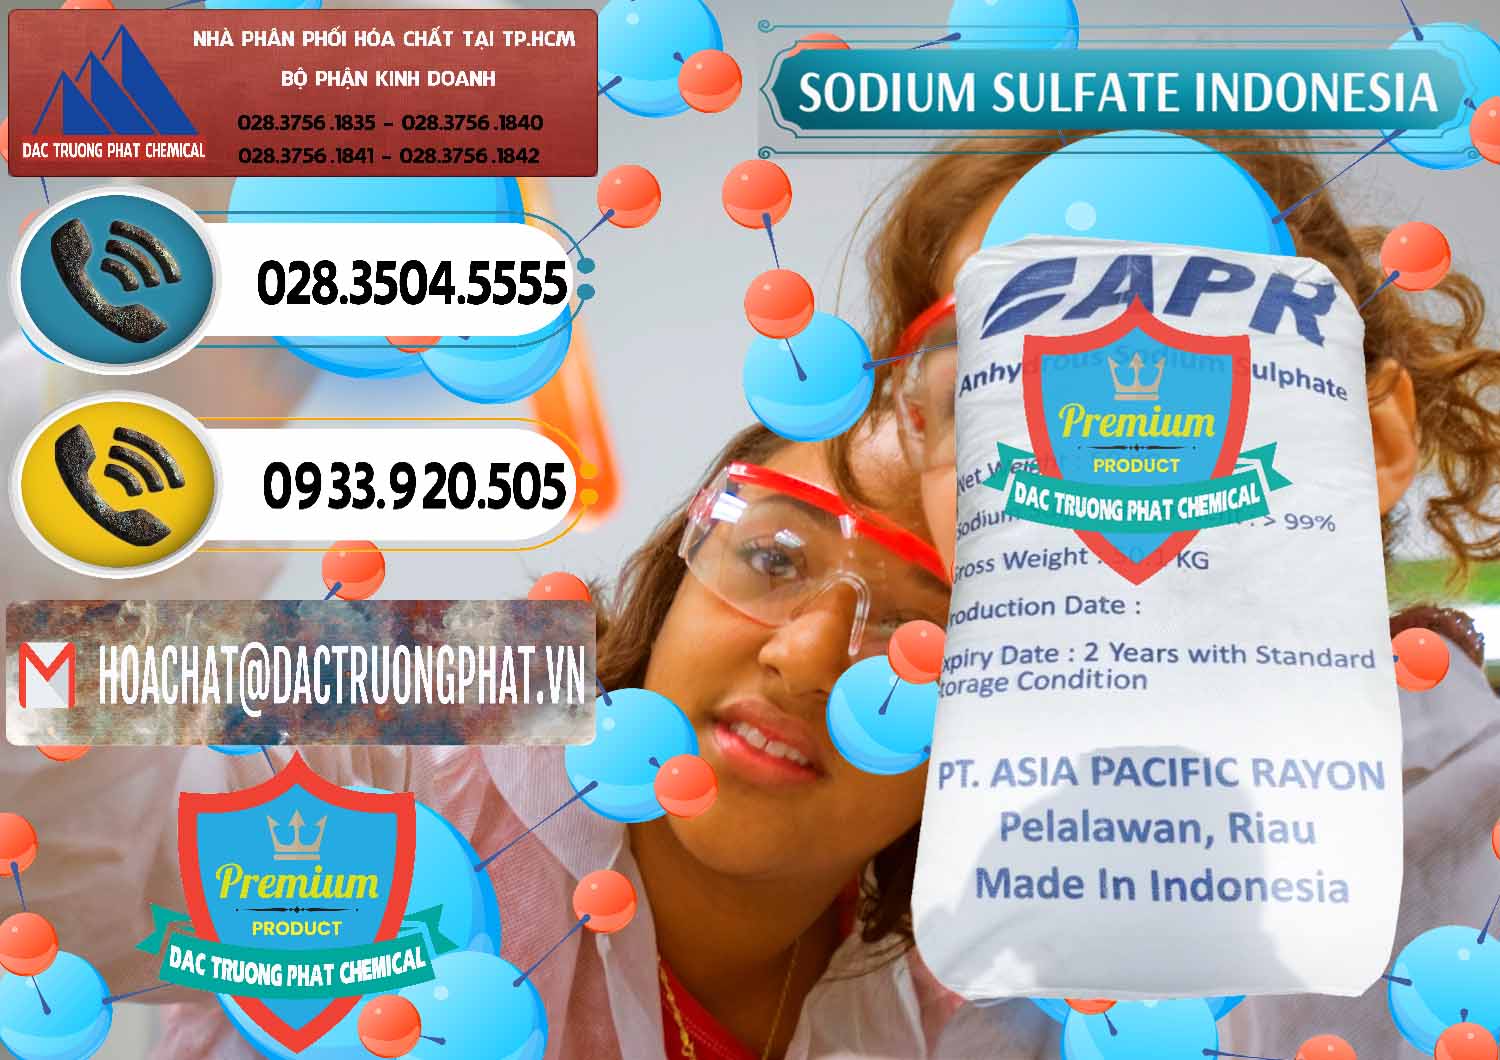 Đơn vị chuyên phân phối _ bán Sodium Sulphate - Muối Sunfat Na2SO4 APR Indonesia - 0460 - Chuyên kinh doanh và phân phối hóa chất tại TP.HCM - hoachatdetnhuom.vn